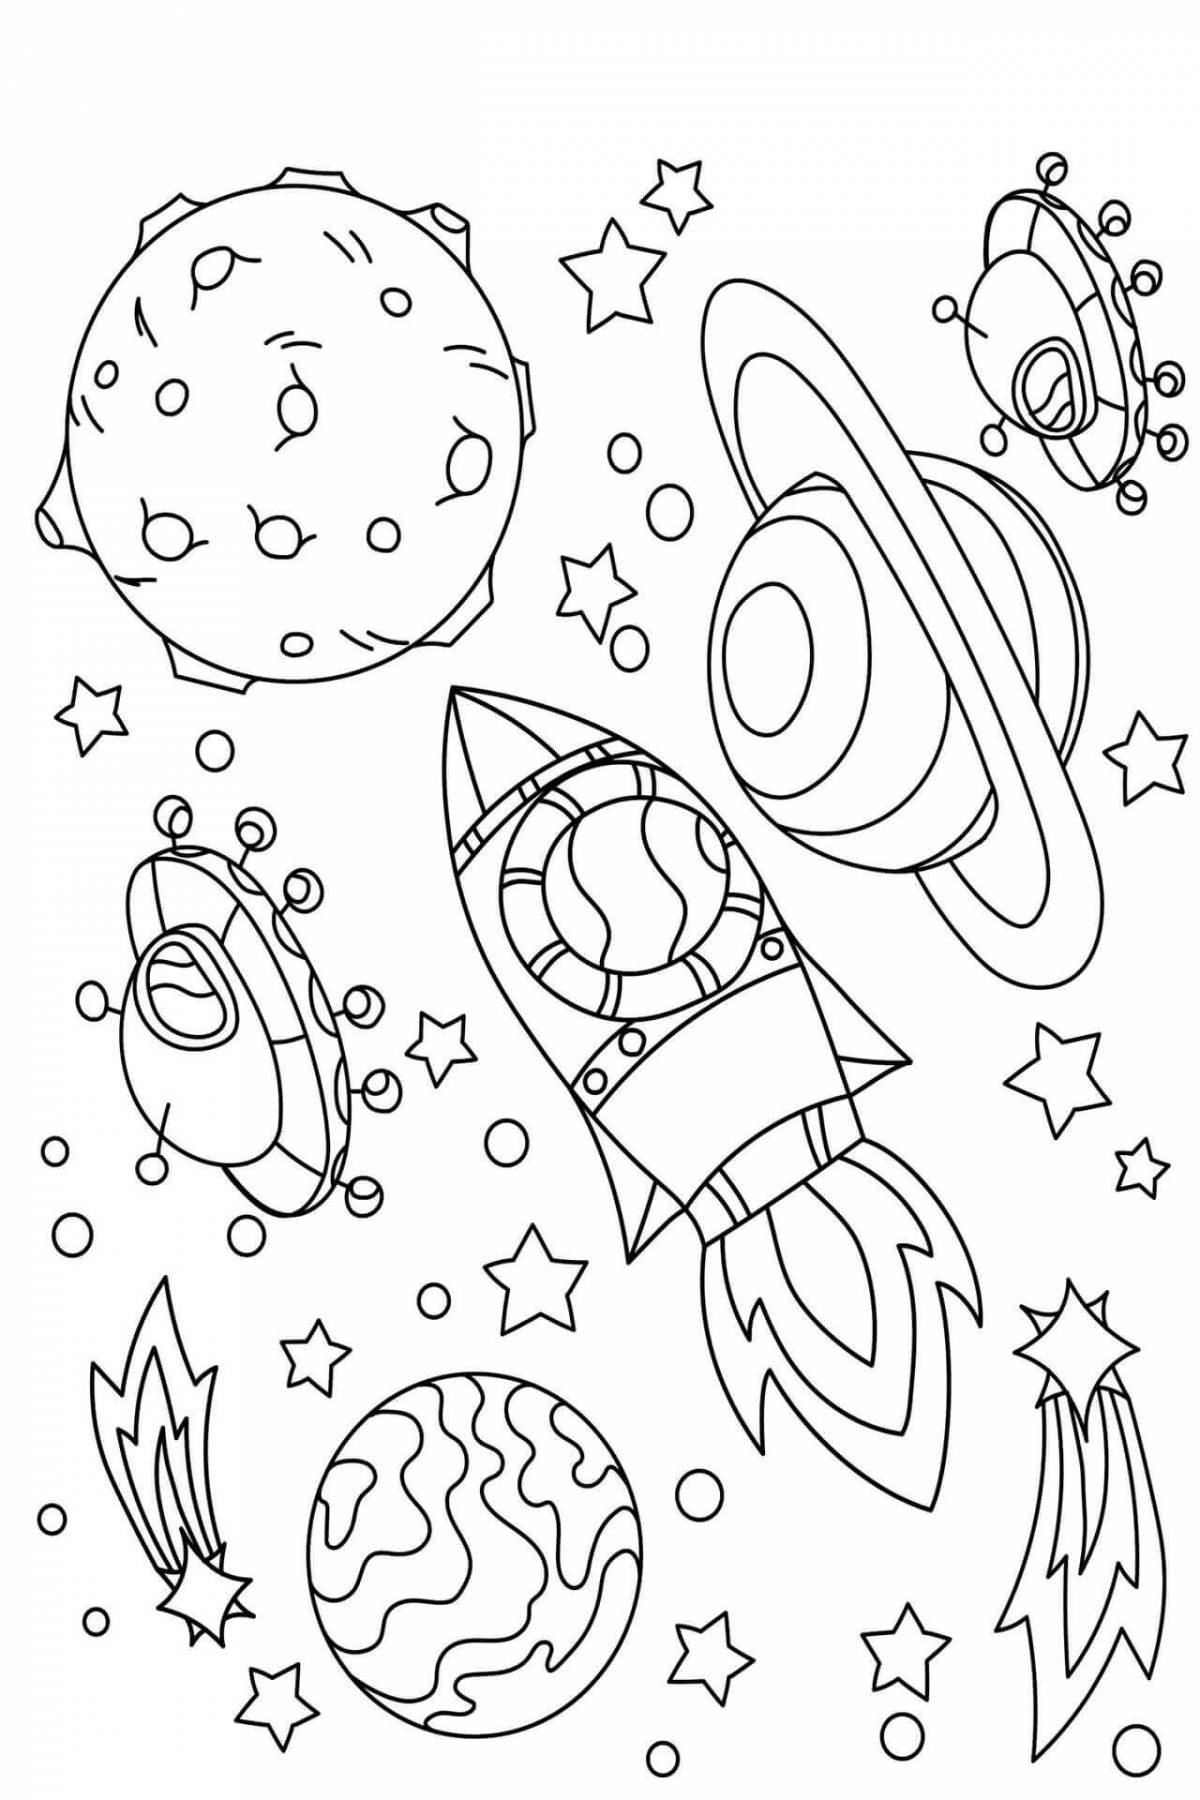 Раскраска космос 4 5. Космос раскраска для детей. Раскраска космос для детей 6-7 лет. Раскраска. В космосе. Раскраски космос для детей 4-5 лет.